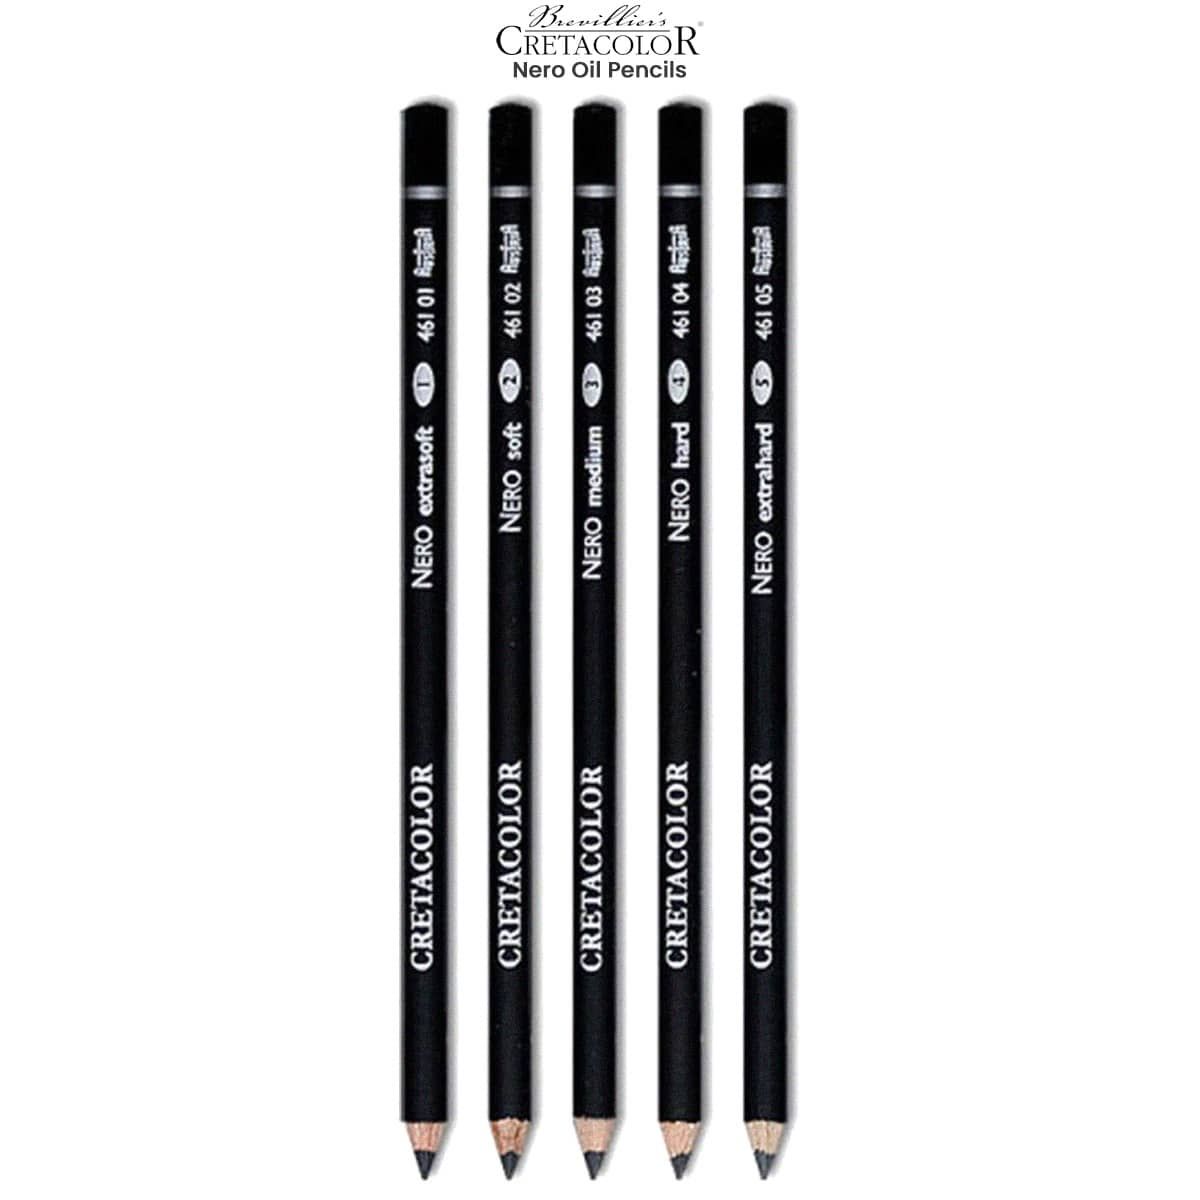 Cretacolor Nero Oil Pencils